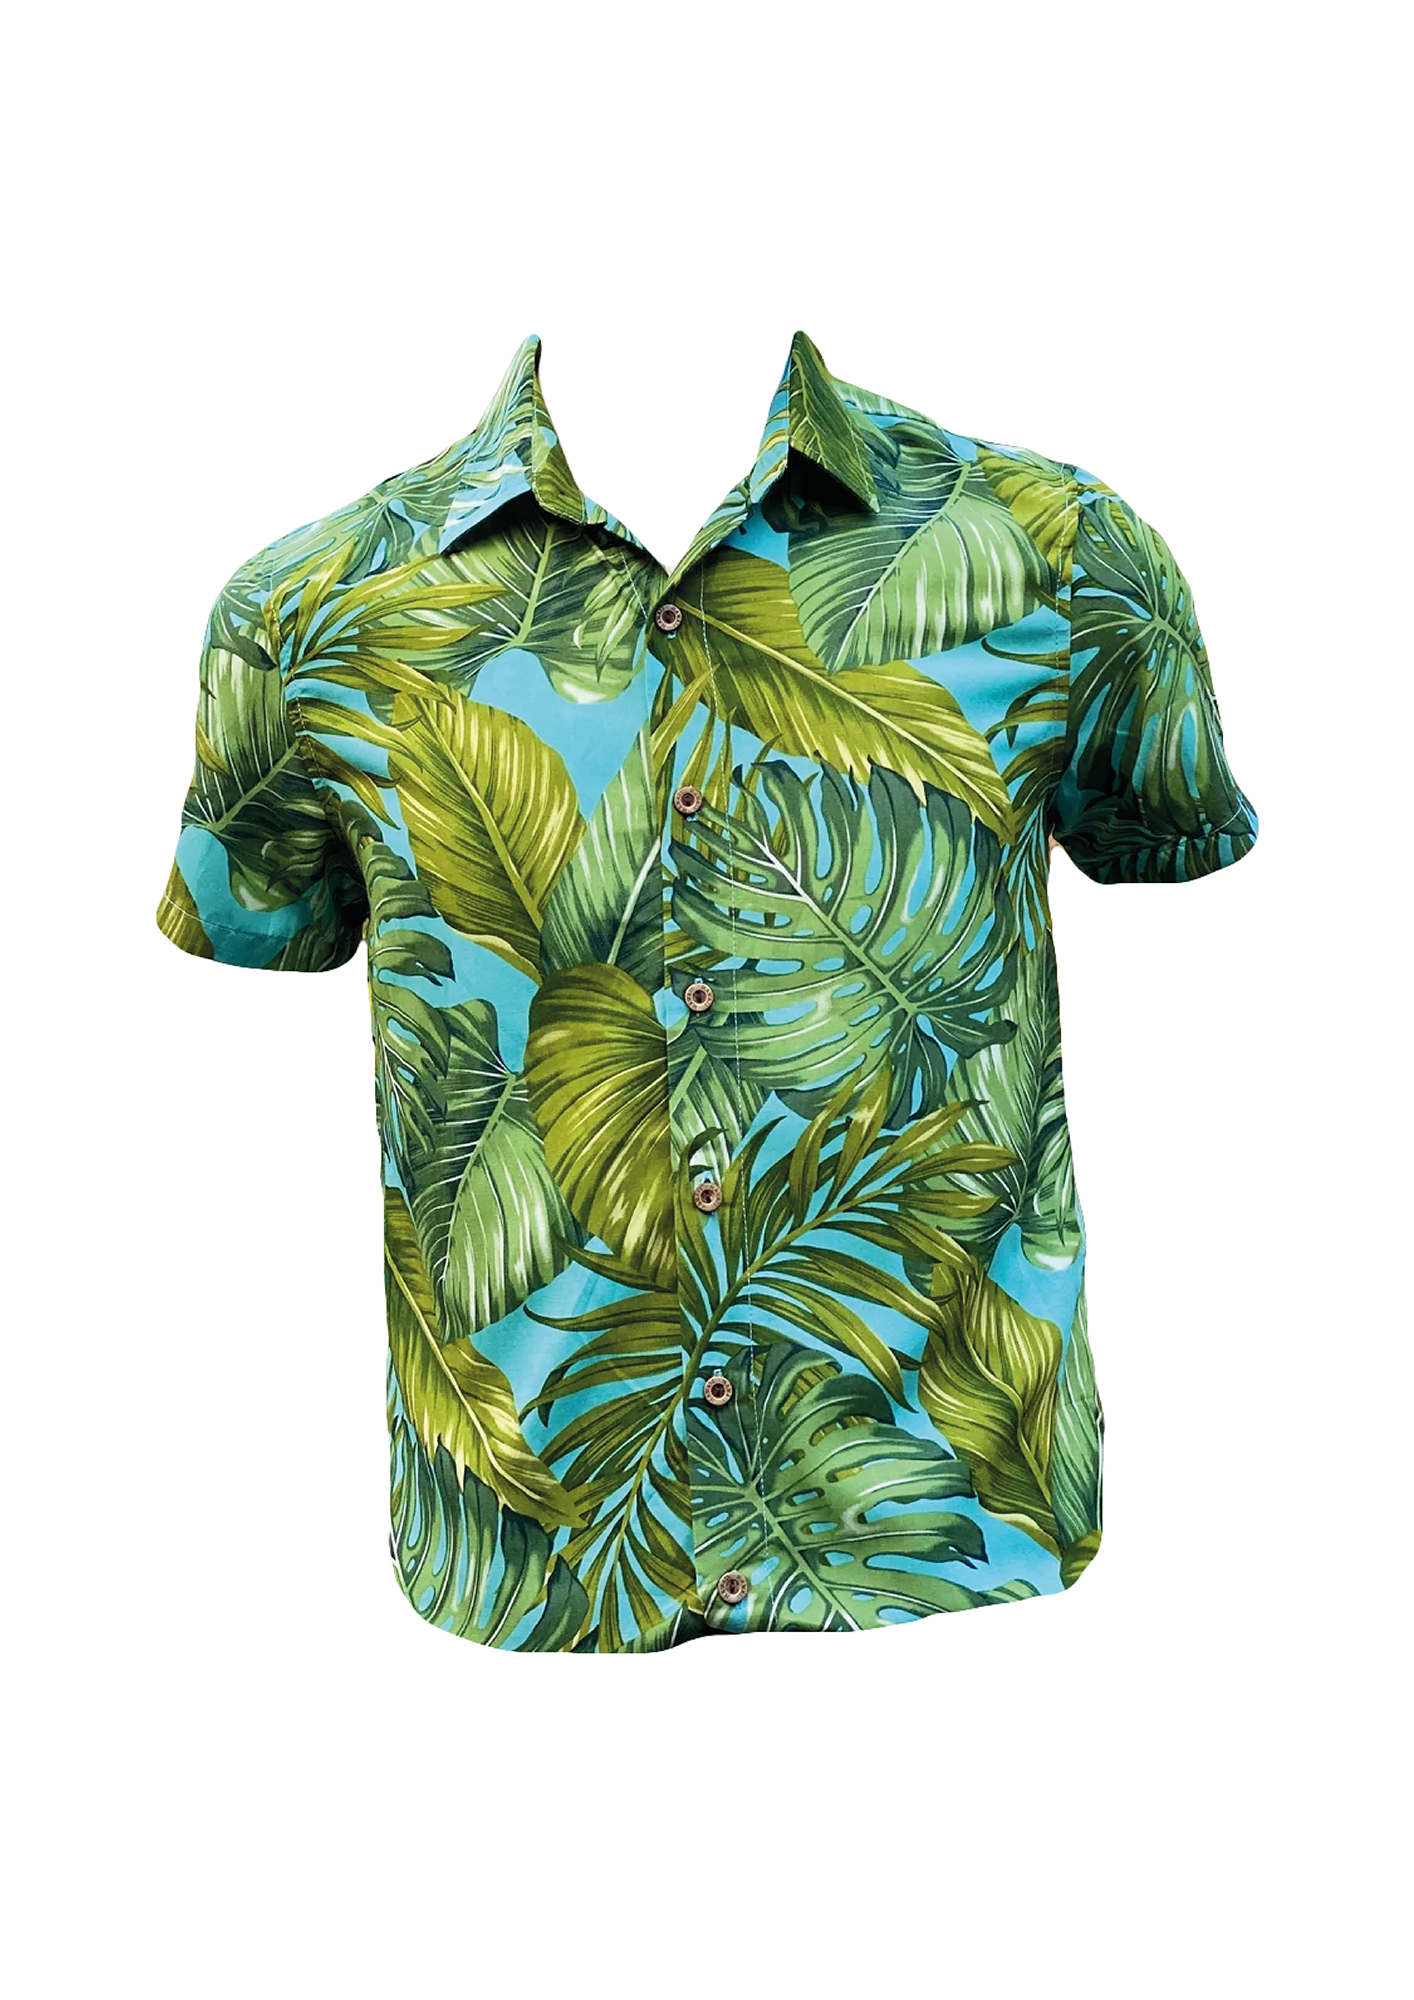 Coradorables BOYS Monstera 21 Turquoise S/S "Kalani" Aloha Shirt